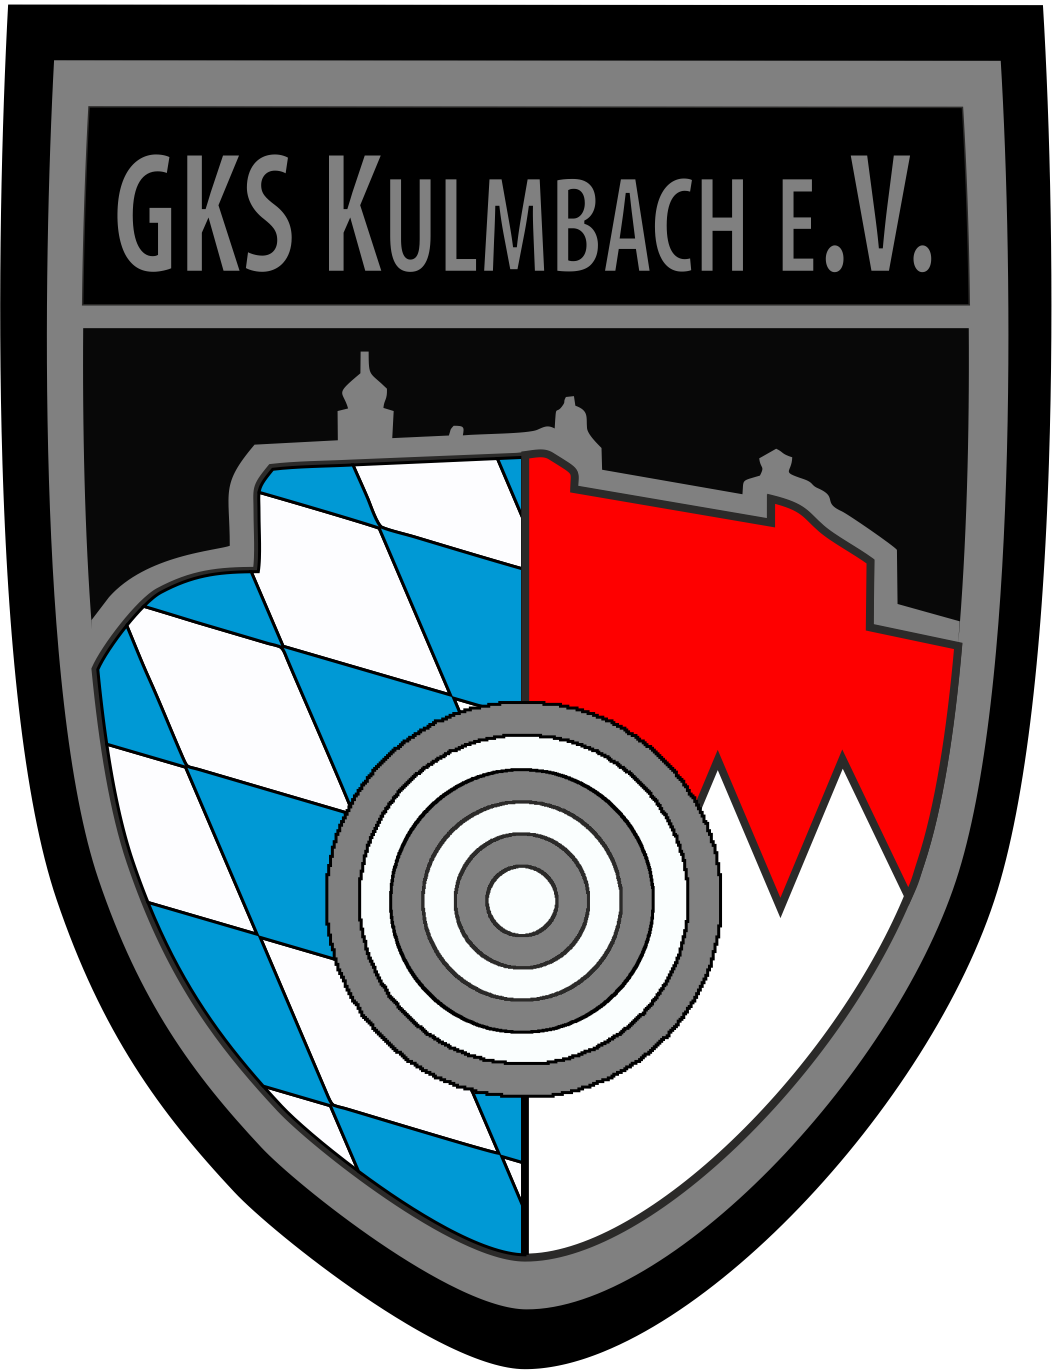 GKS Kulmbach e.V.